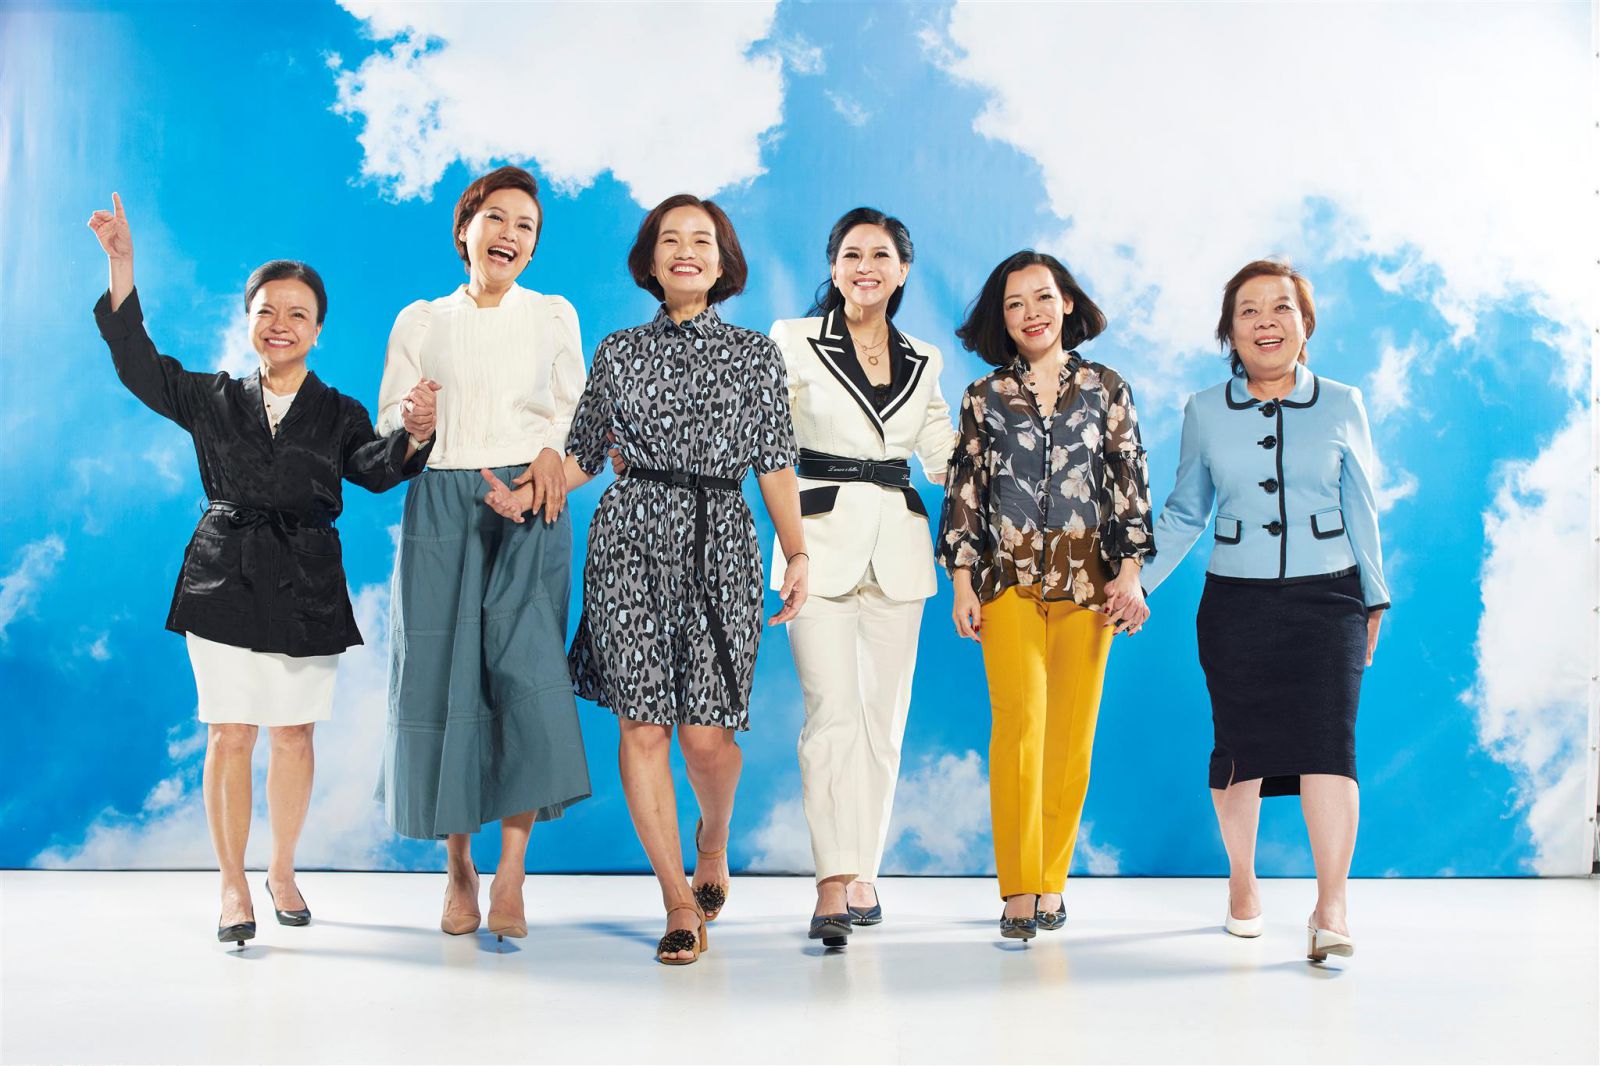 Chân dung những phụ nữ ảnh hưởng nhất Việt Nam năm 2019 theo bình chọn của Forbes